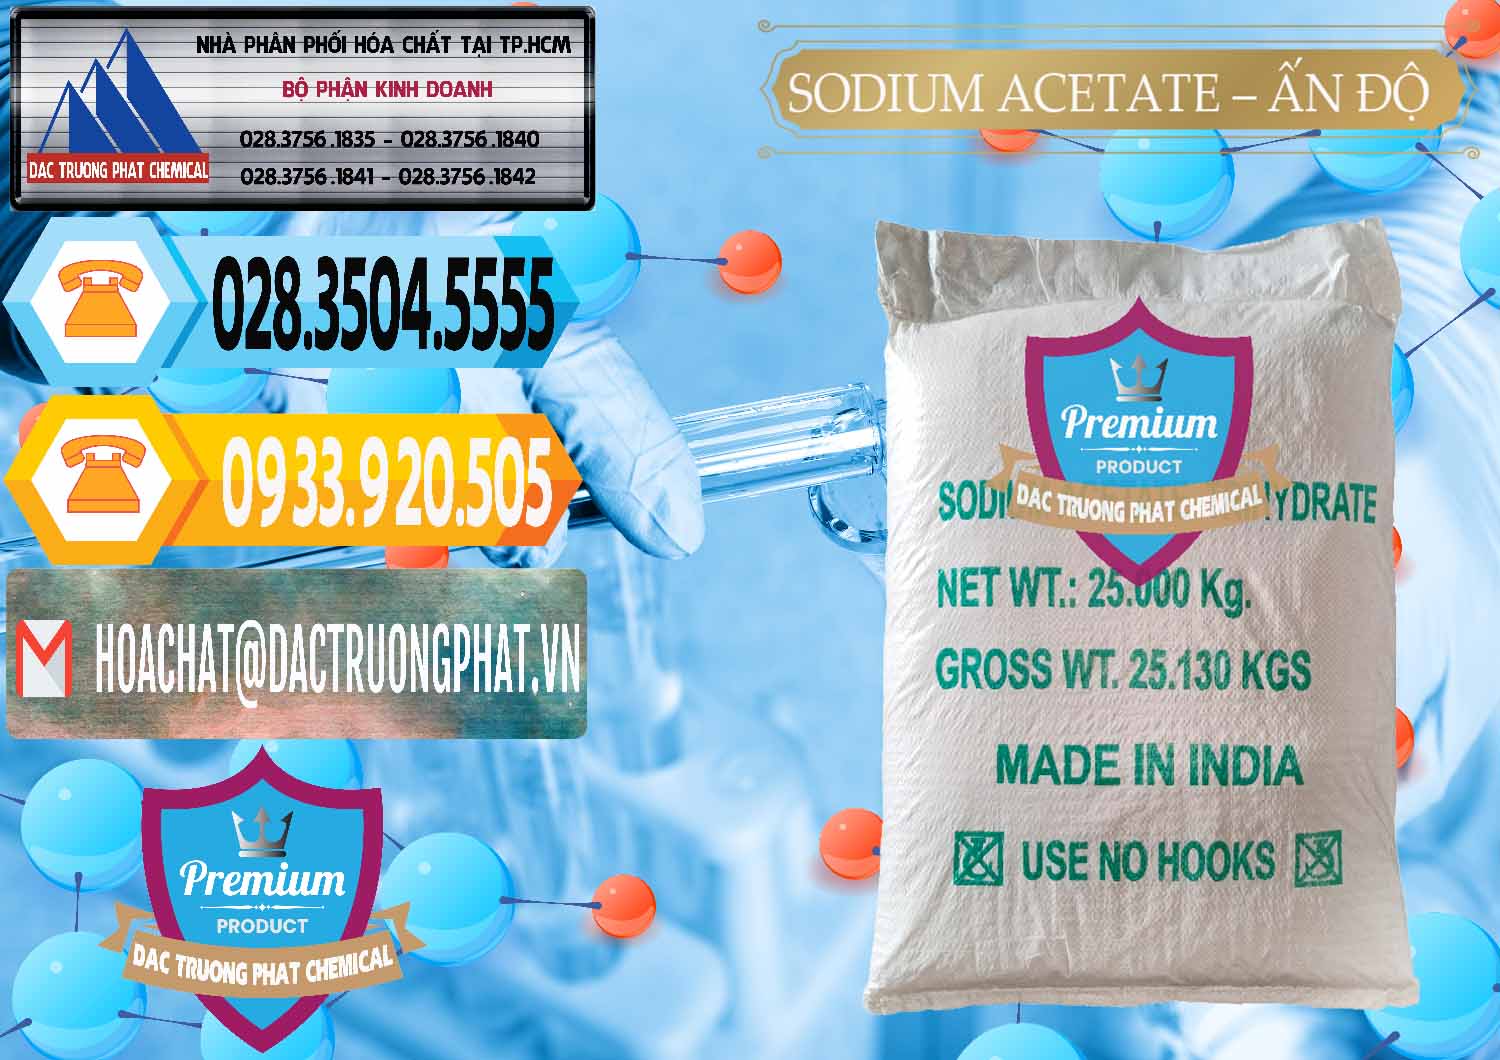 Nơi chuyên cung ứng _ bán Sodium Acetate - Natri Acetate Ấn Độ India - 0133 - Bán ( phân phối ) hóa chất tại TP.HCM - hoachattayrua.net